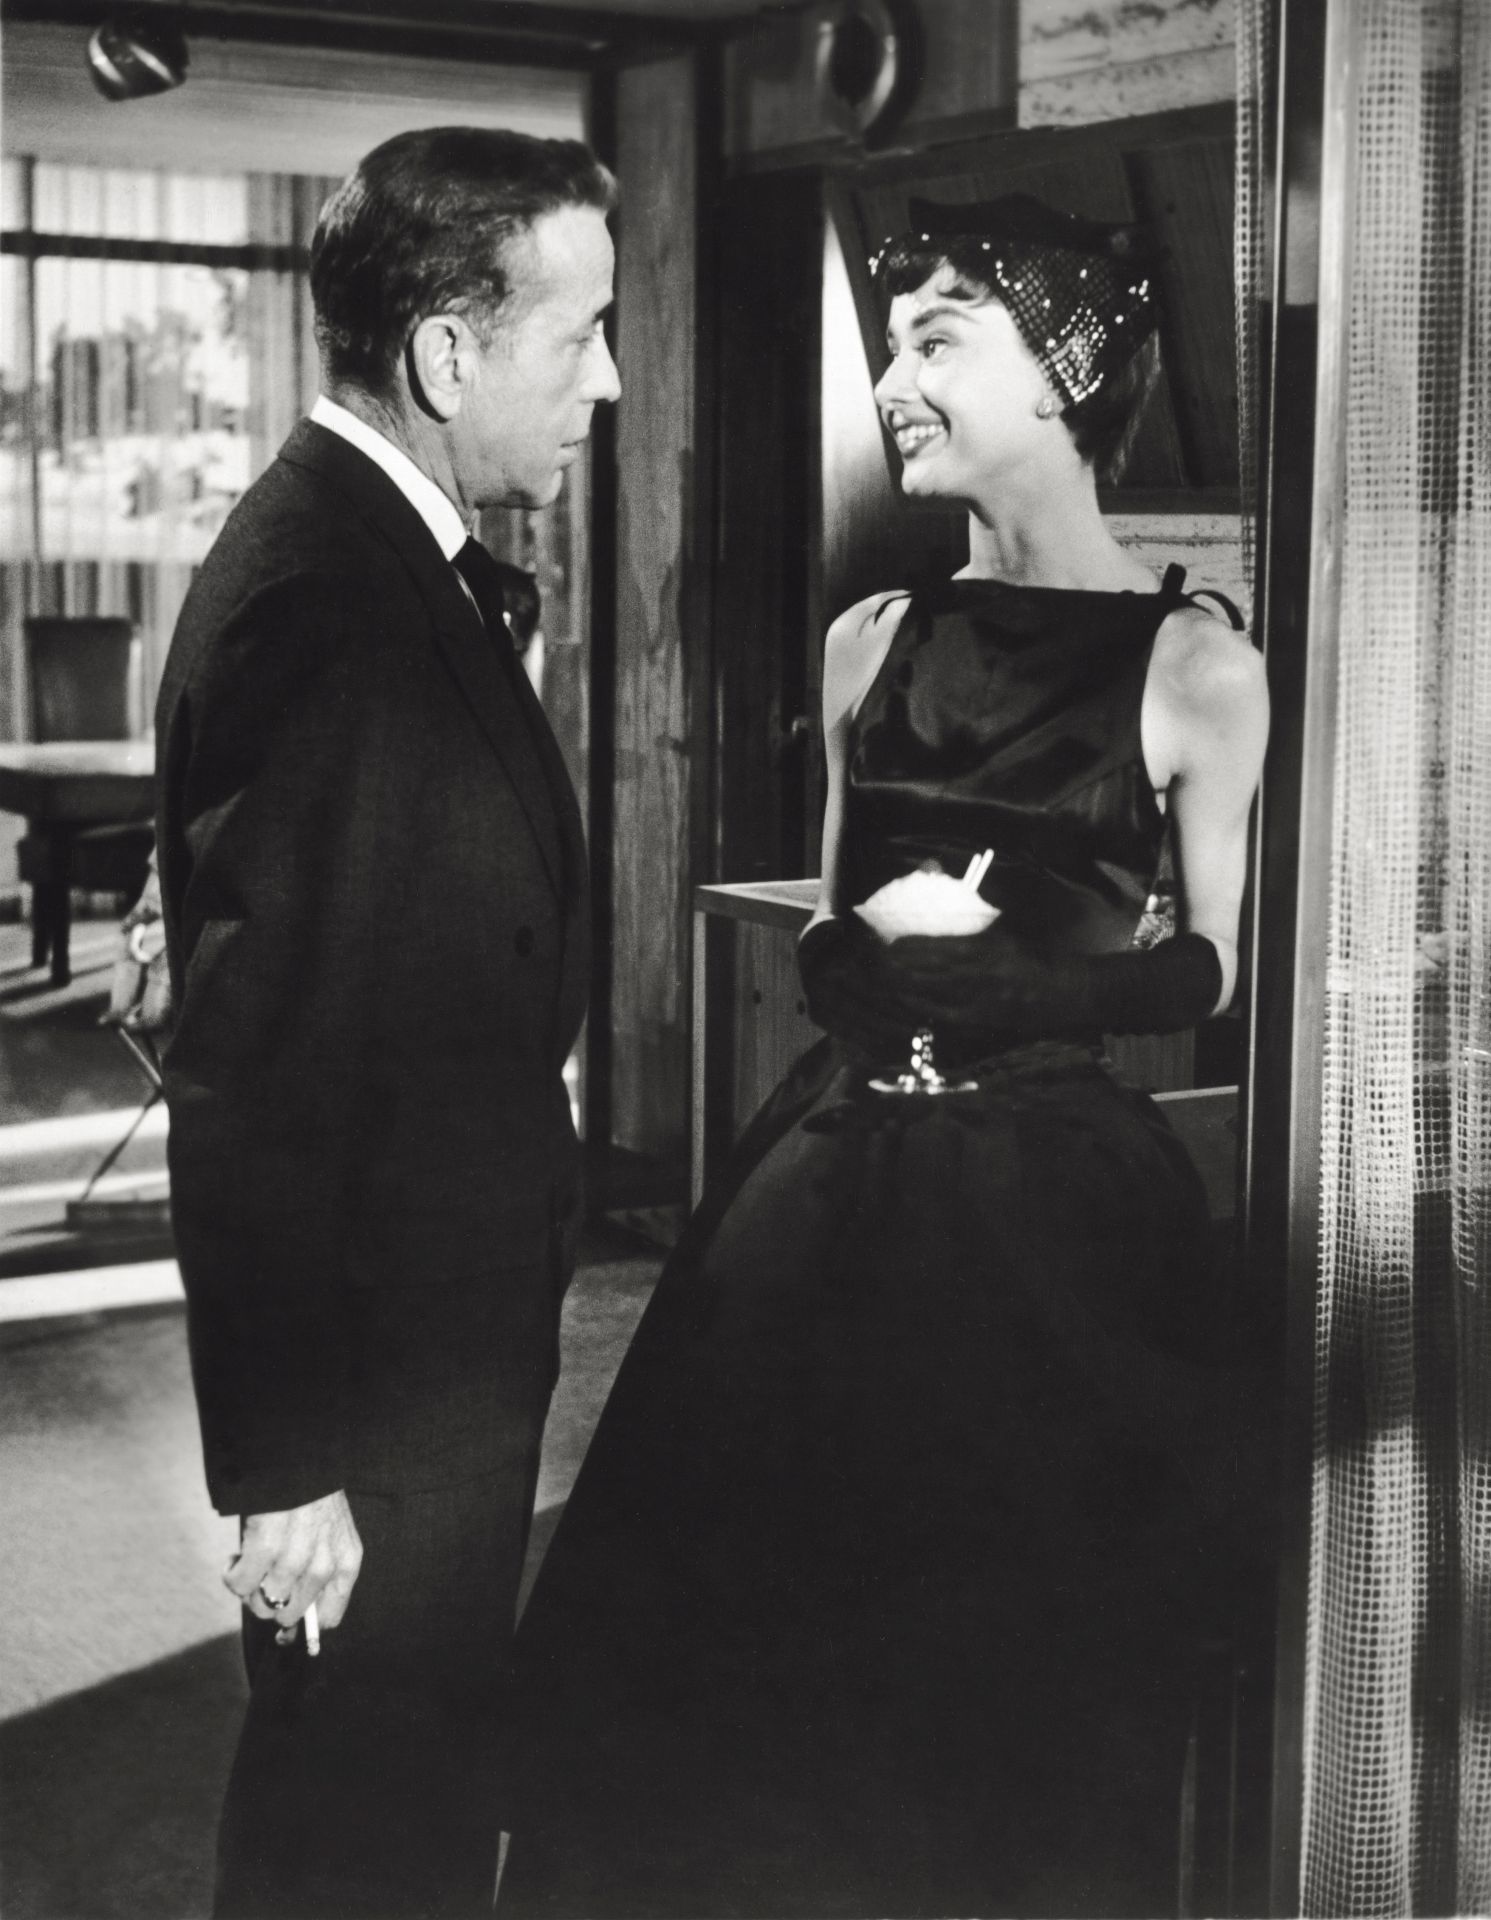 Audrey Hepburn és Humphrey Bogart a Sabrina című film egyik jelenetében, melyben a színésznő a mára ikonikussá vált kis fekete ruháját viseli.